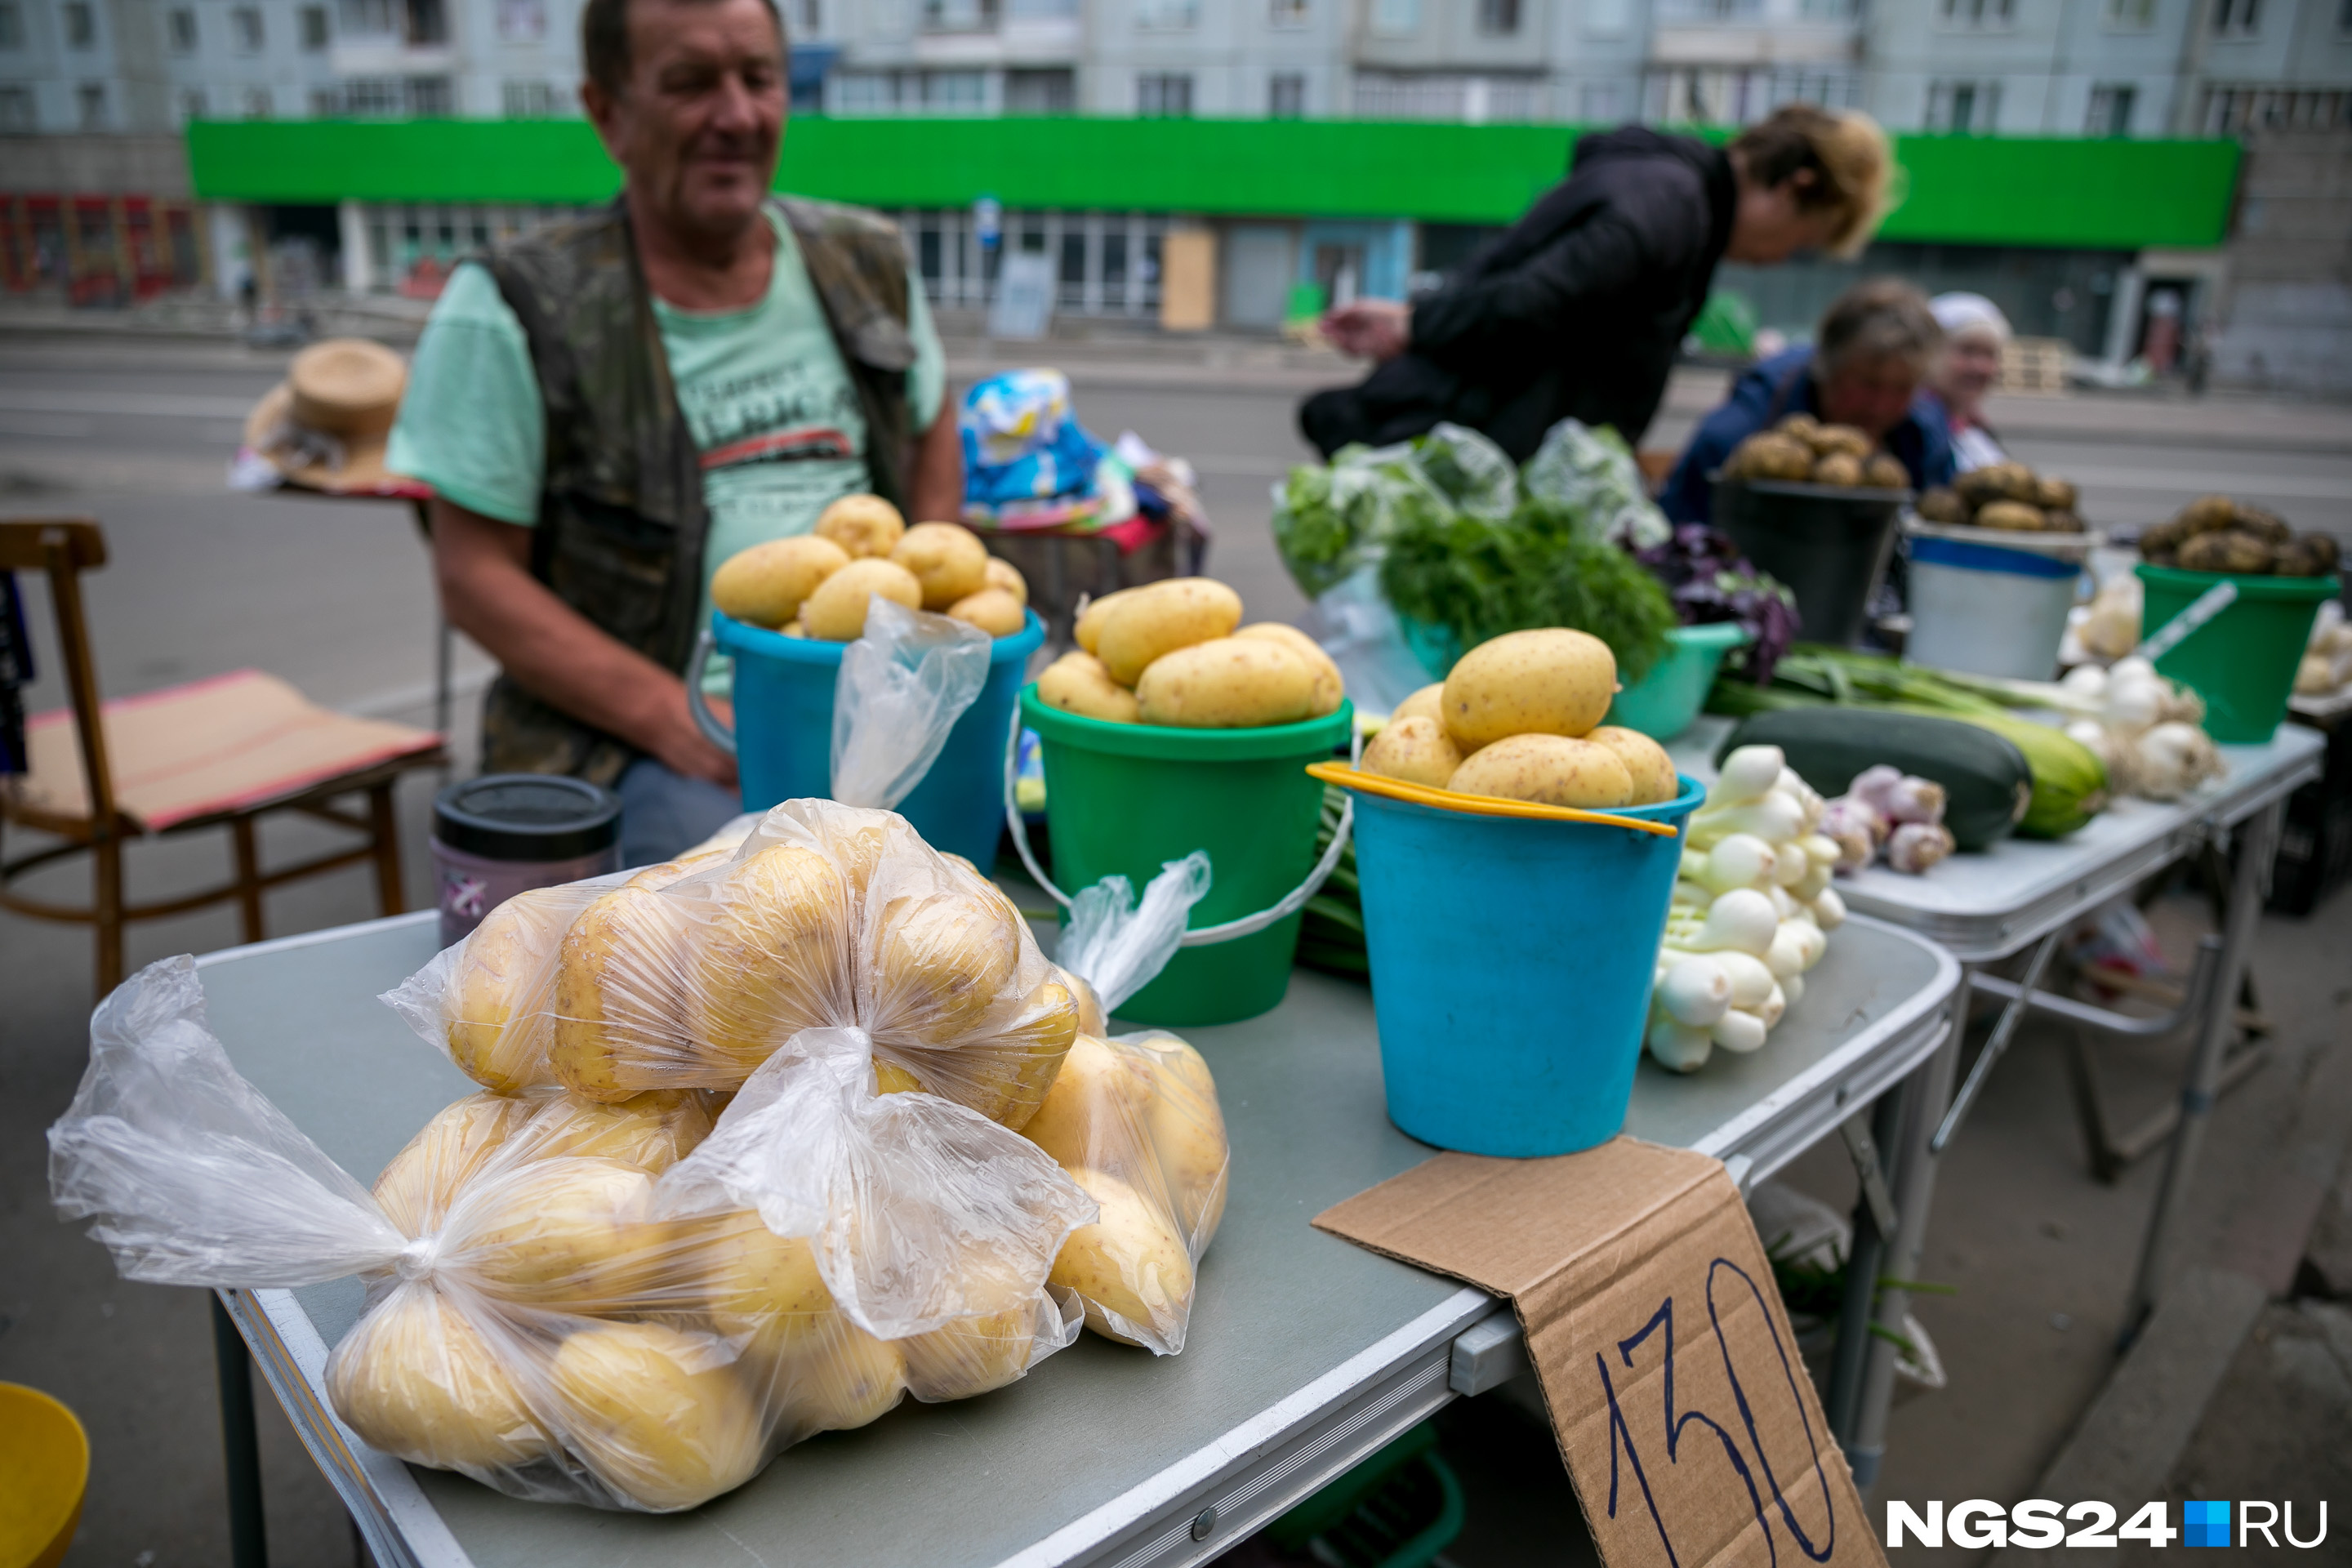 Цену продавцы скидывают легко — корреспонденту килограмм картофеля продали за 100 рублей, а не за 130